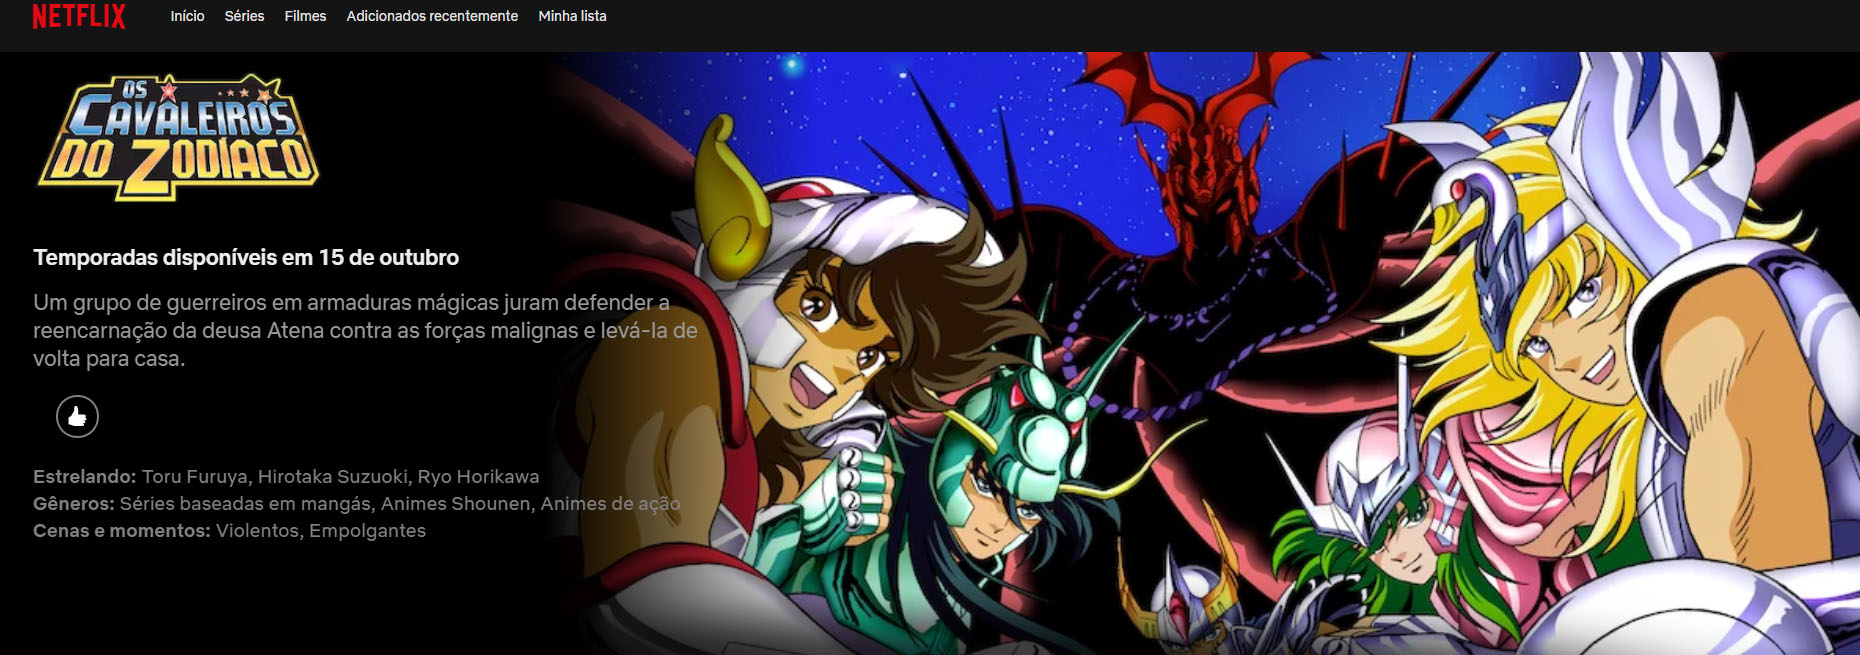 Os Cavaleiros do Zodíaco Dublado Episódio 114 Online - Animes Online